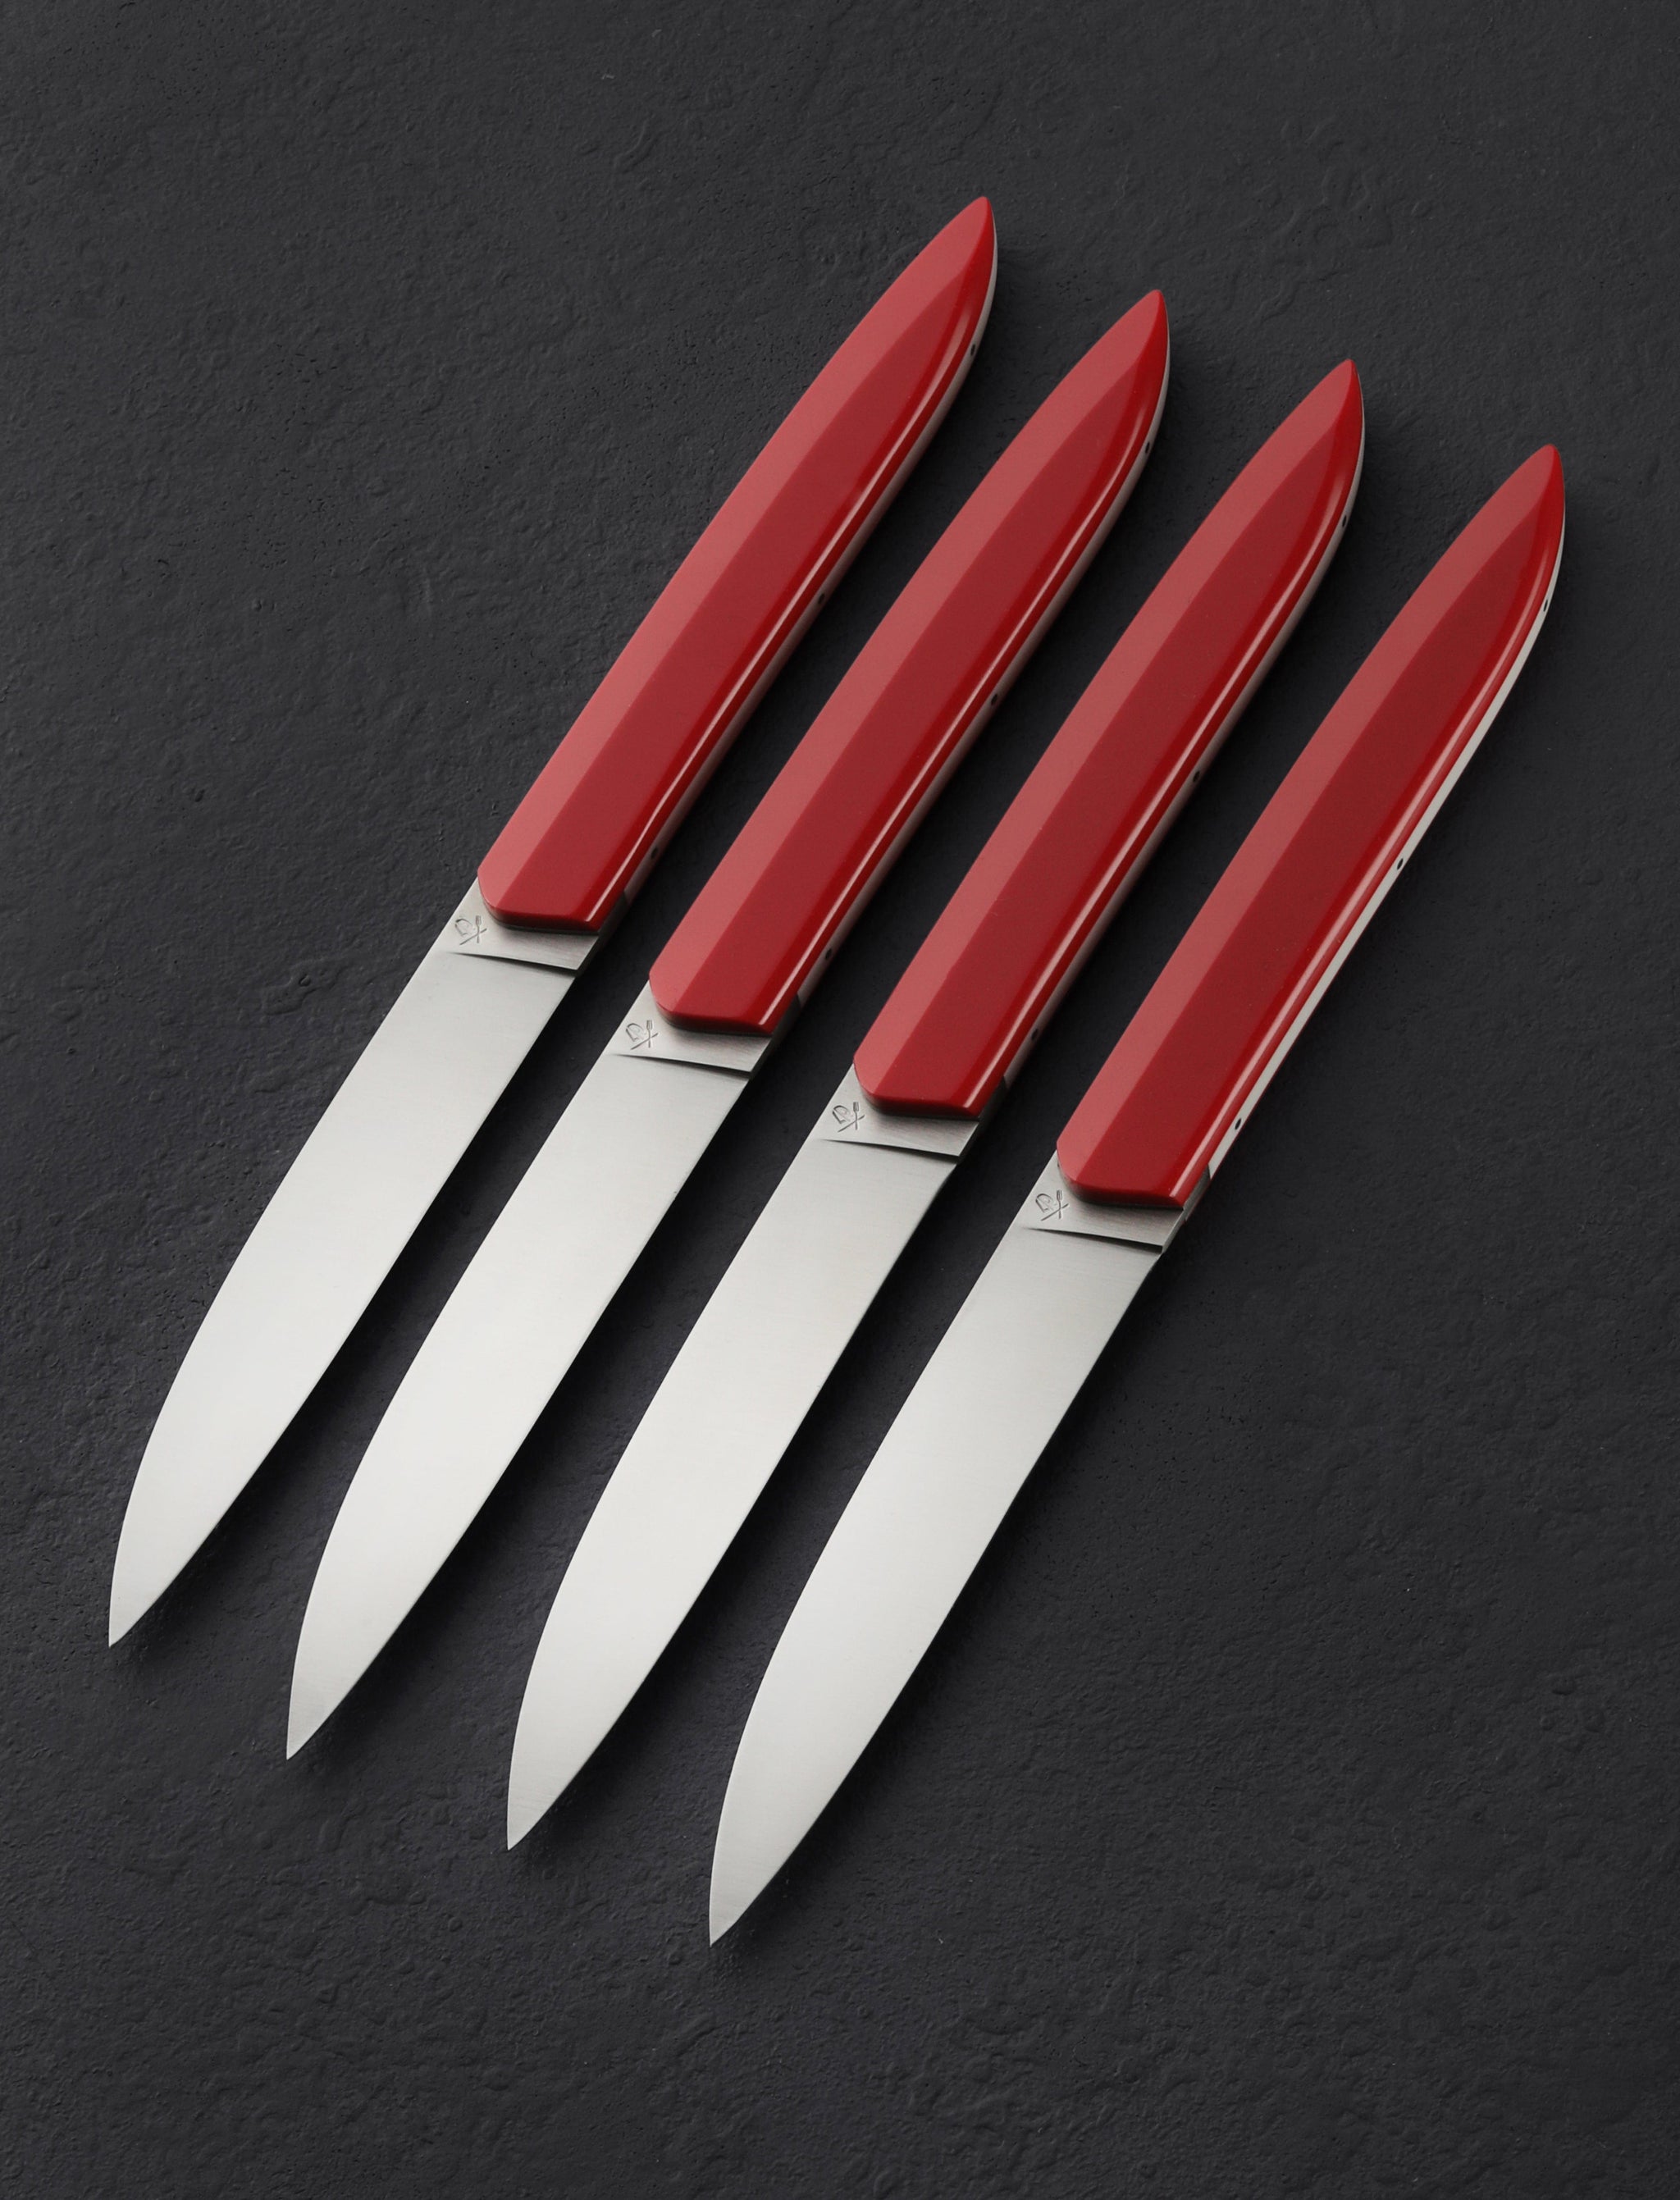 https://eatingtools.com/cdn/shop/files/table-knives-roland-lannier-france-royal-red-steak-knife-set-43020420645139.jpg?v=1693339569&width=2048